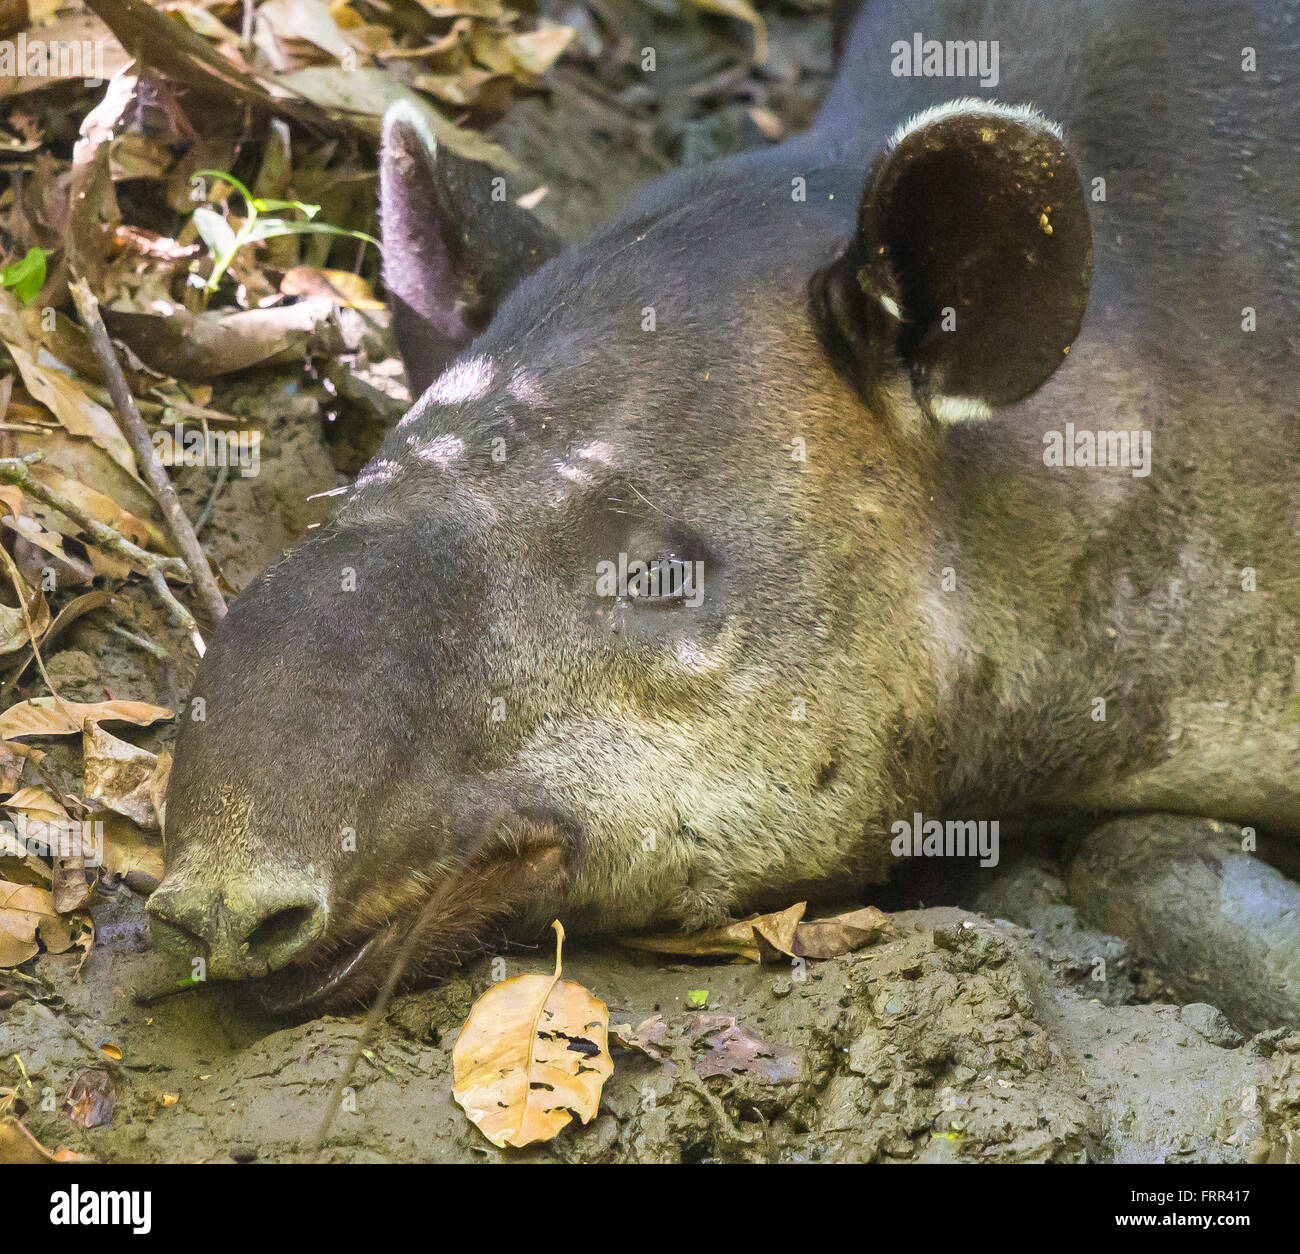 Parco nazionale di Corcovado, COSTA RICA - Baird il tapiro, femmine gravide di riposo, osa penisola. Specie in via di estinzione. Tapirus bairdii Foto Stock